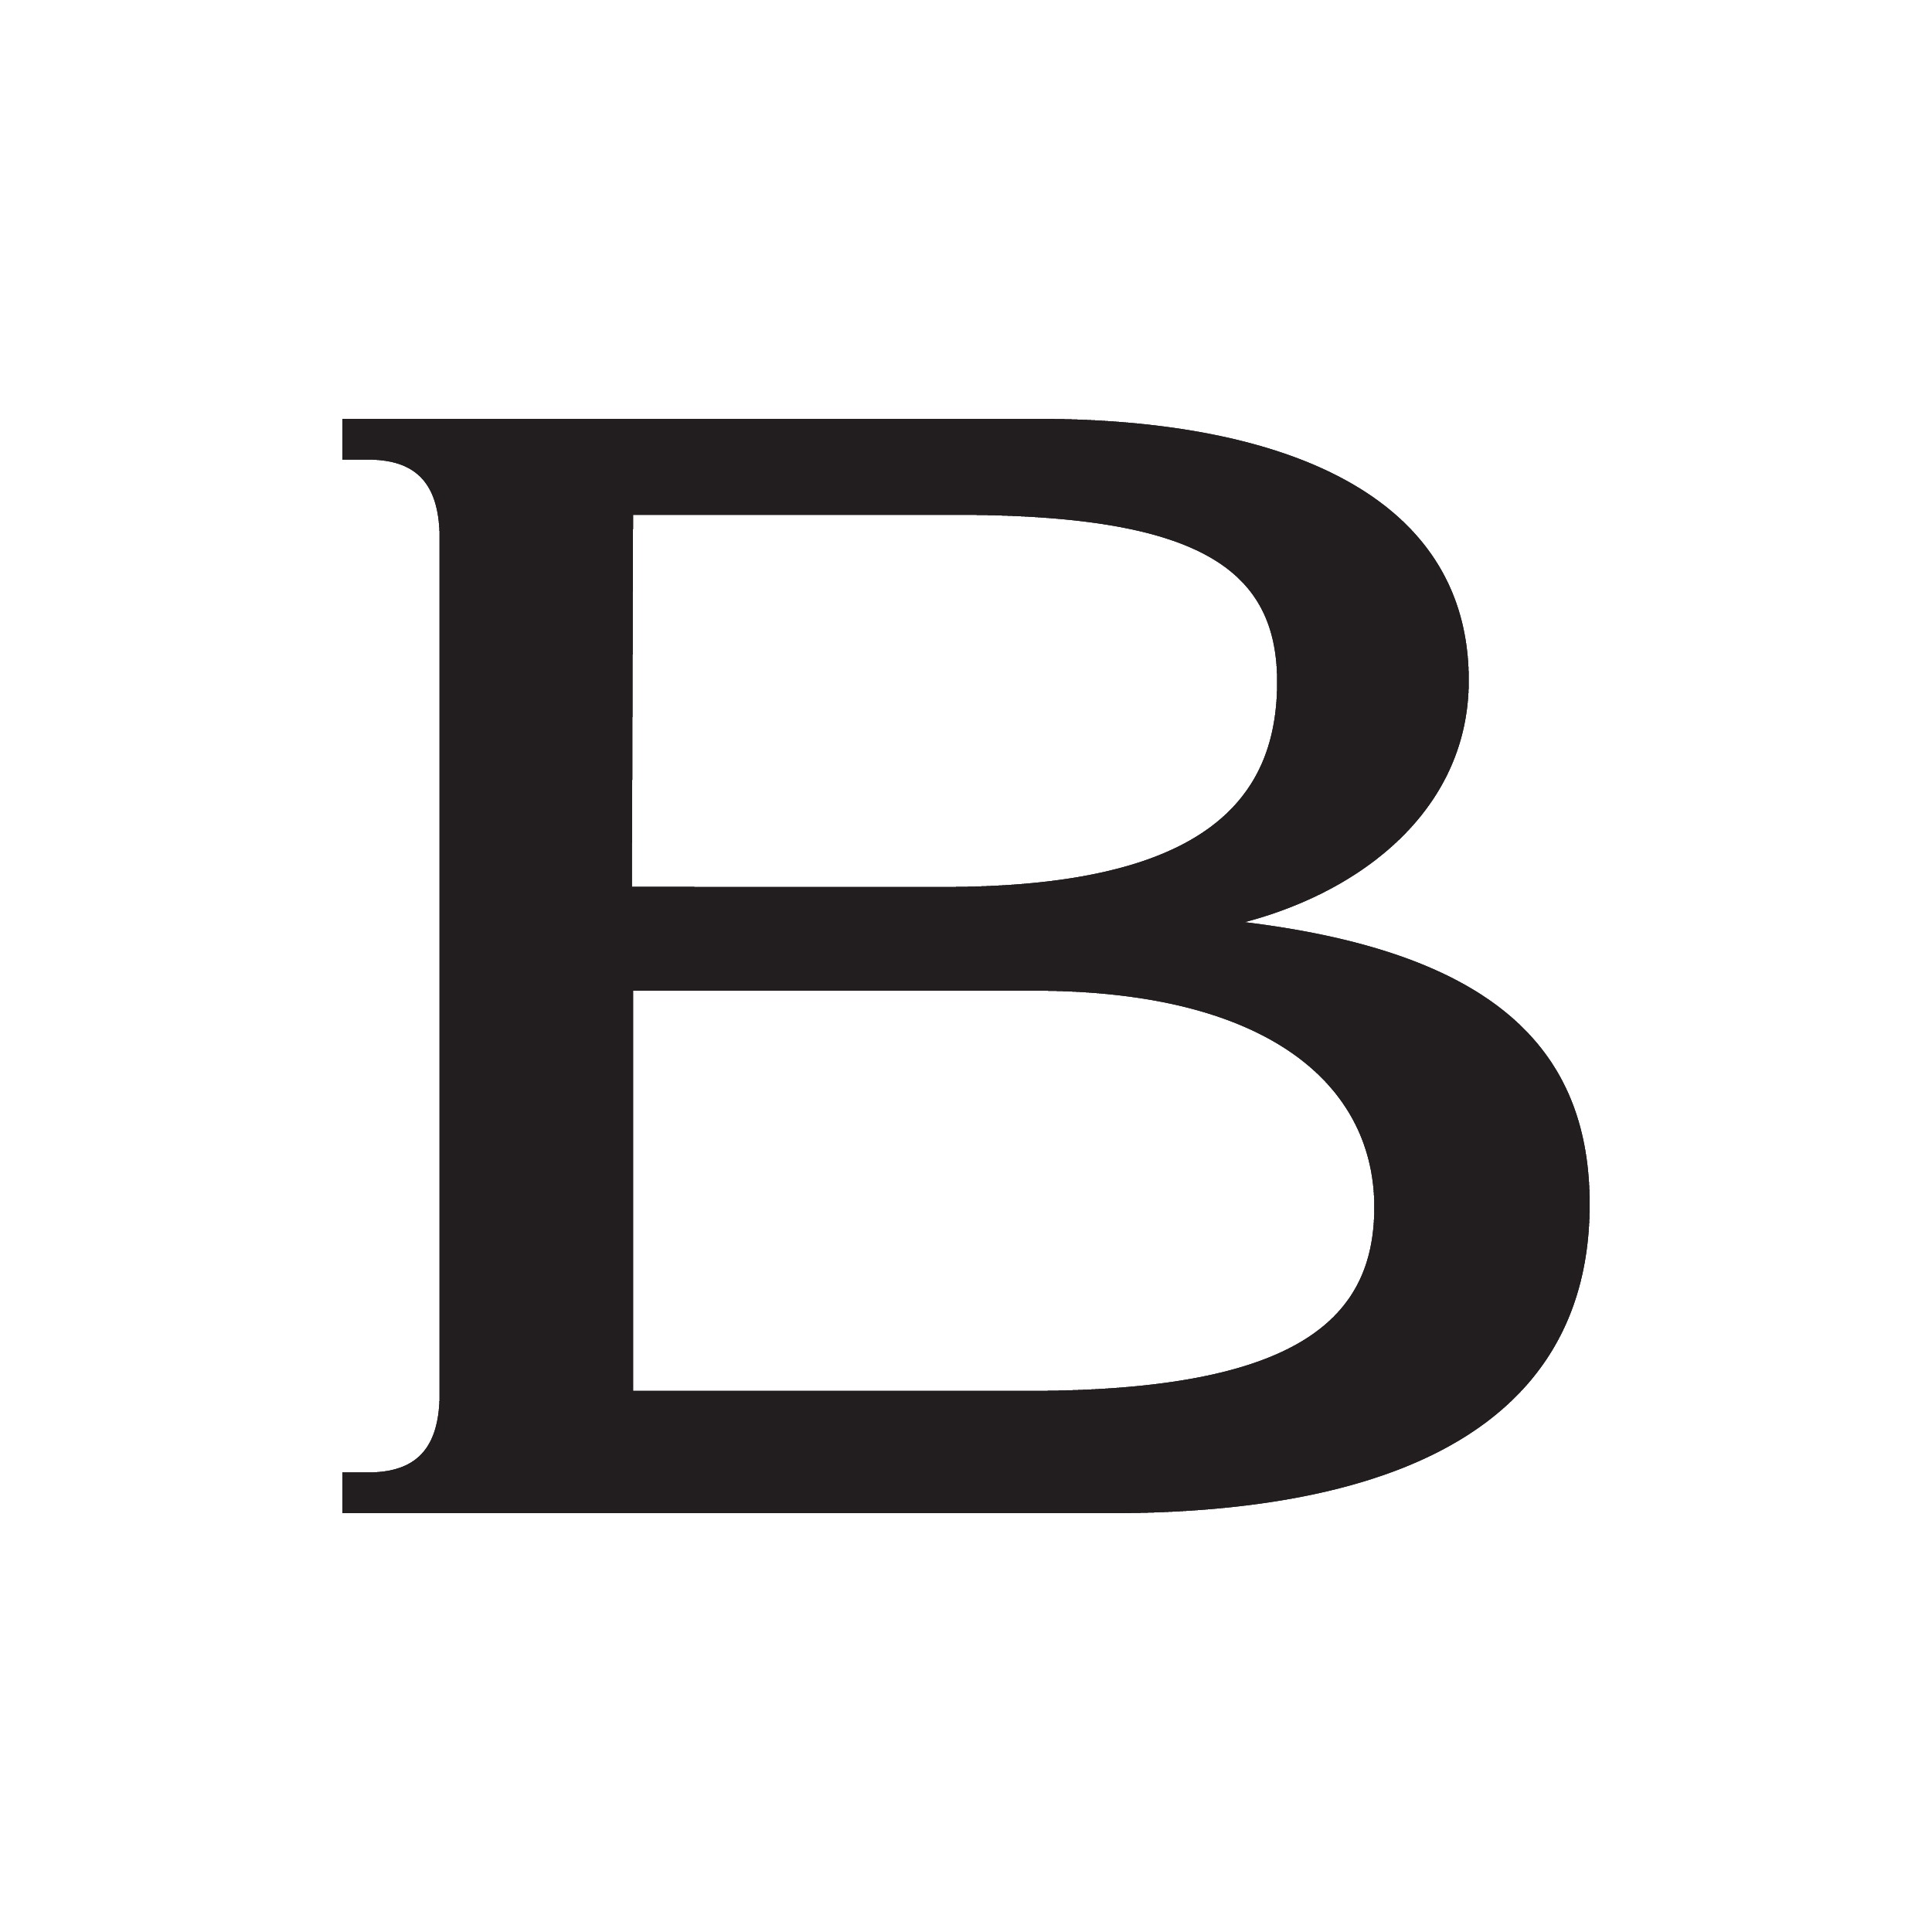 BVLGARI in Hamburg - Logo